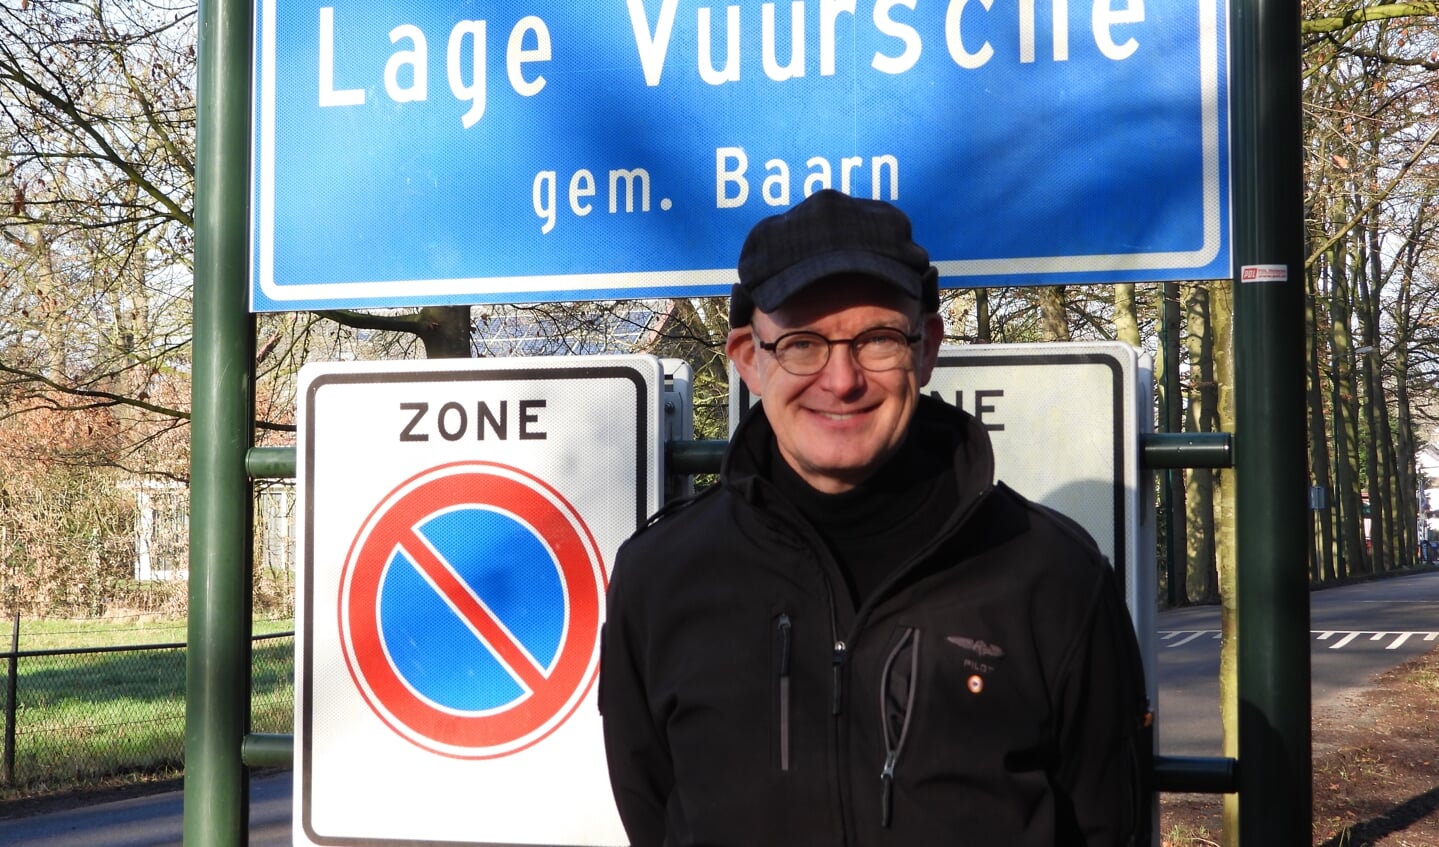 Inwoners van Lage Vuursche hebben de loterij gewonnen dat ze hier mogen wonen, vindt Jeroen van den Berg.